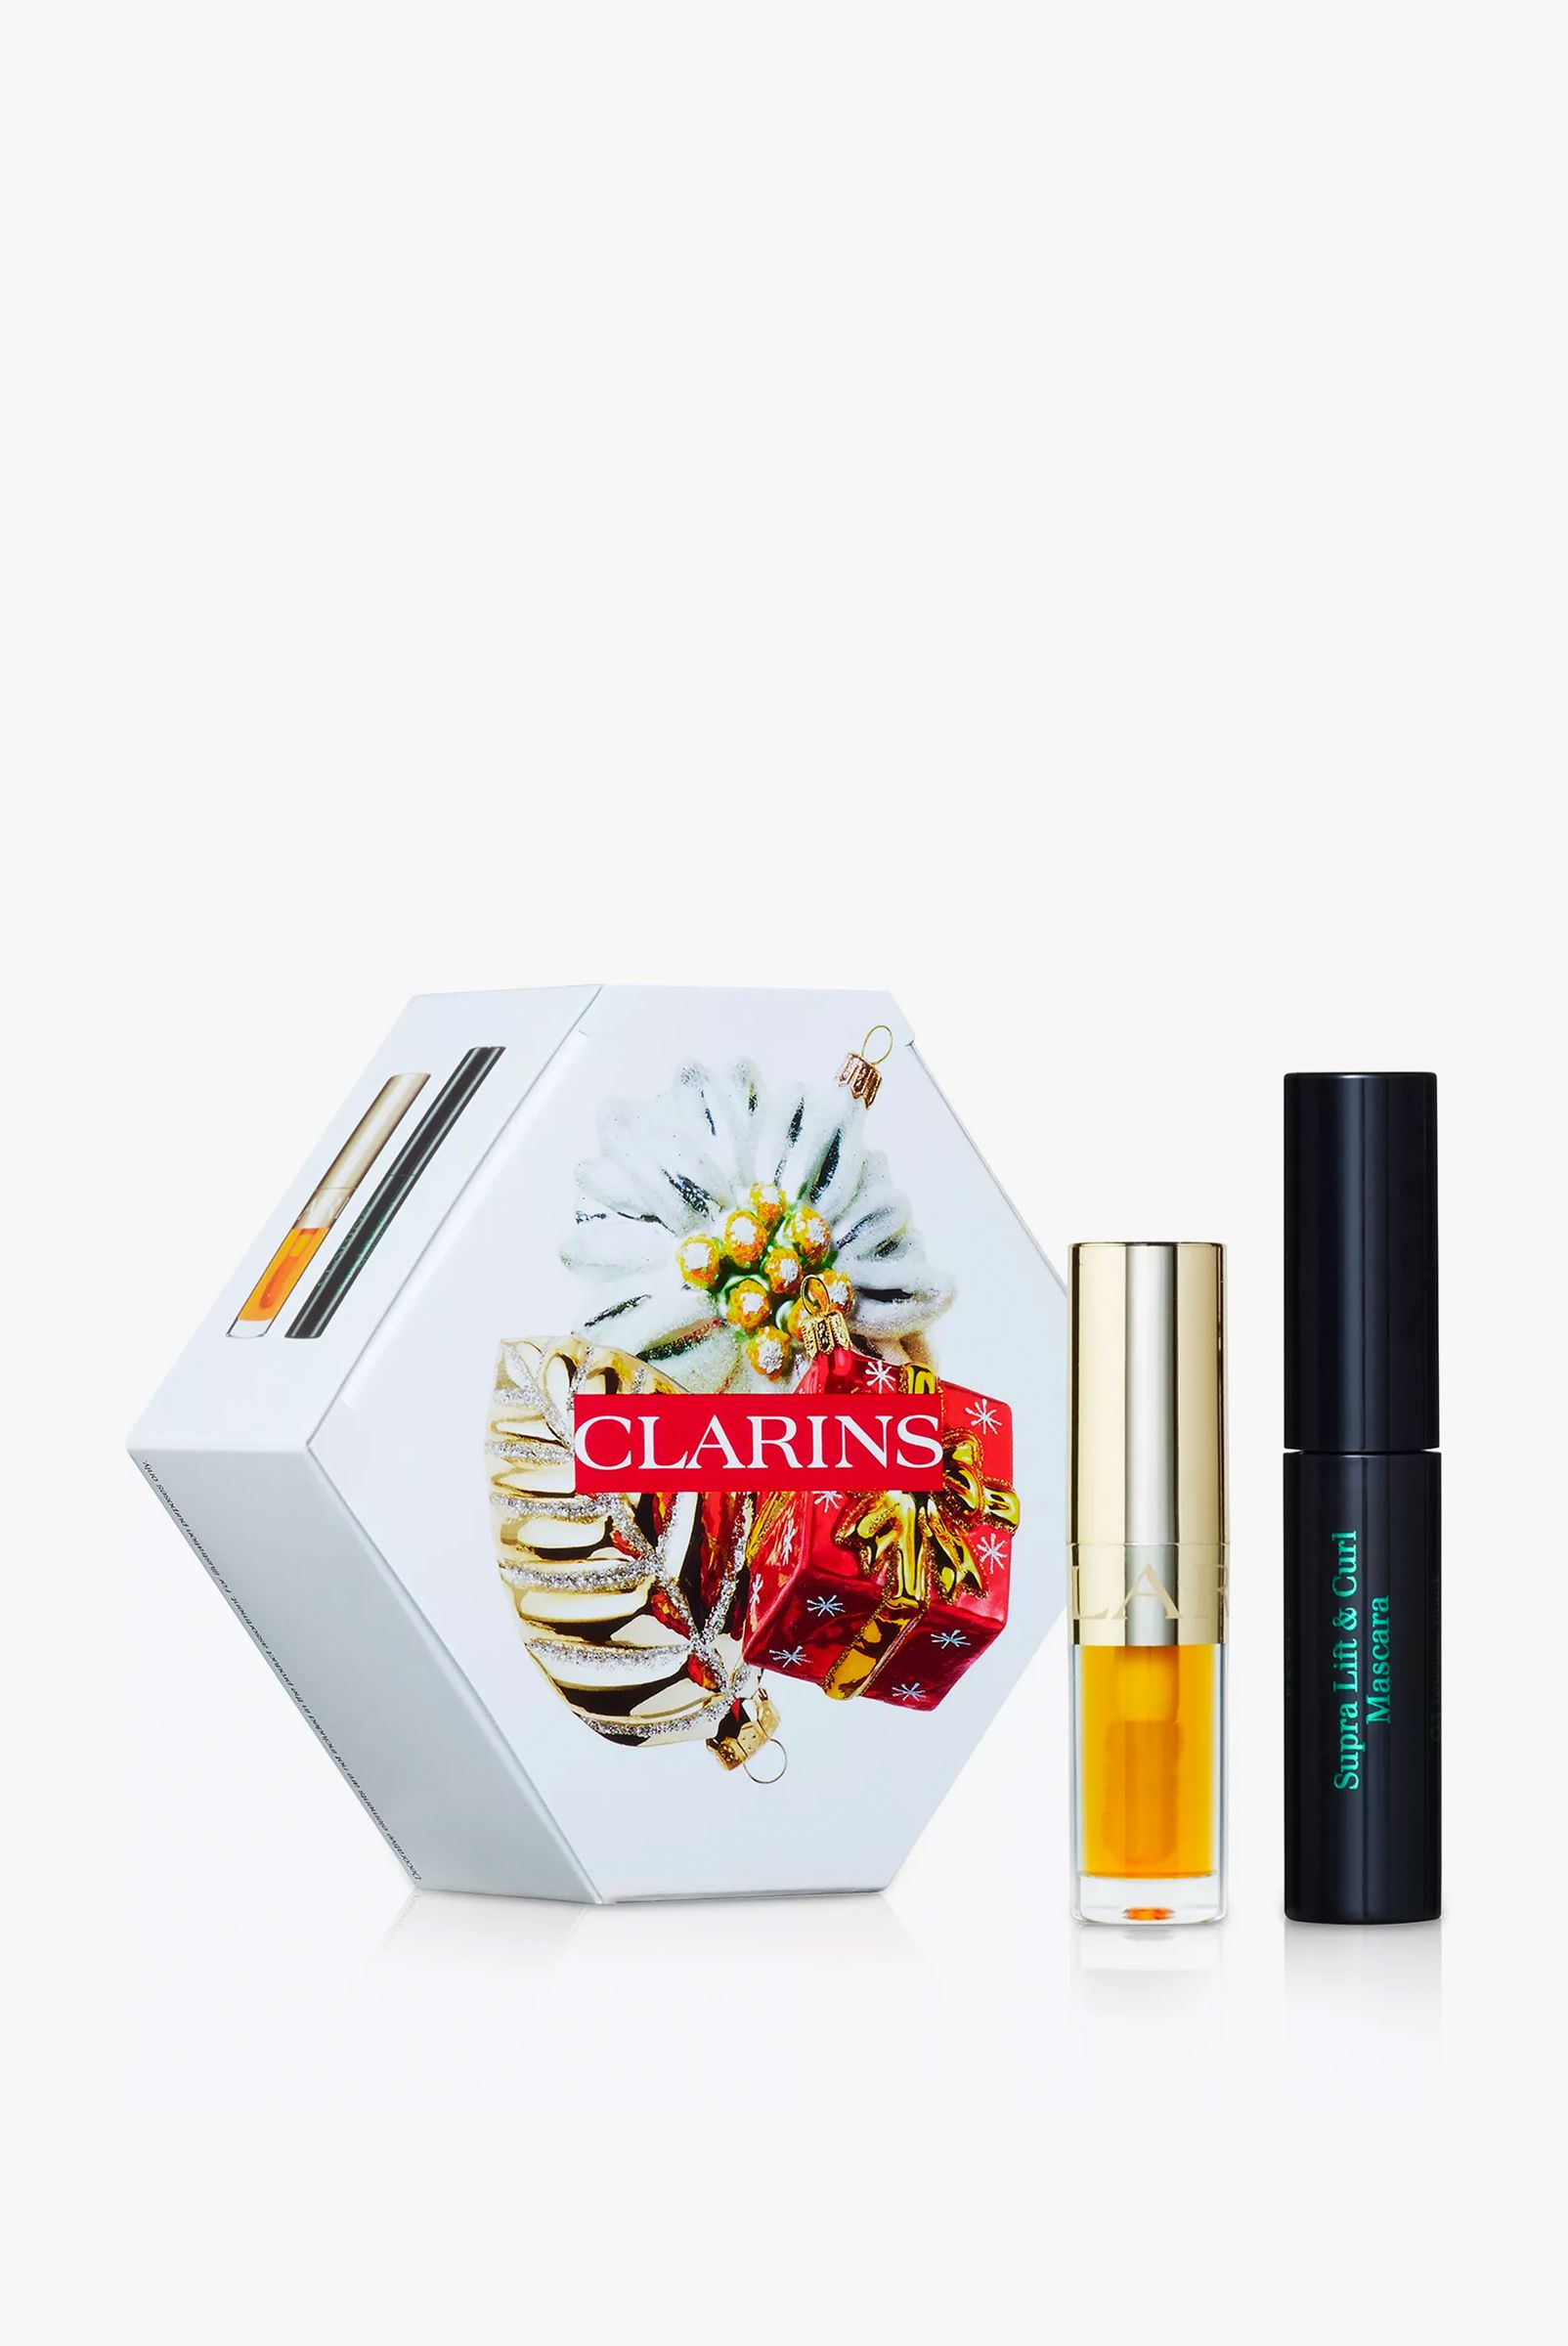 Clarins Lips & Lashes Stocking Filler Makeup Gift Set, £10